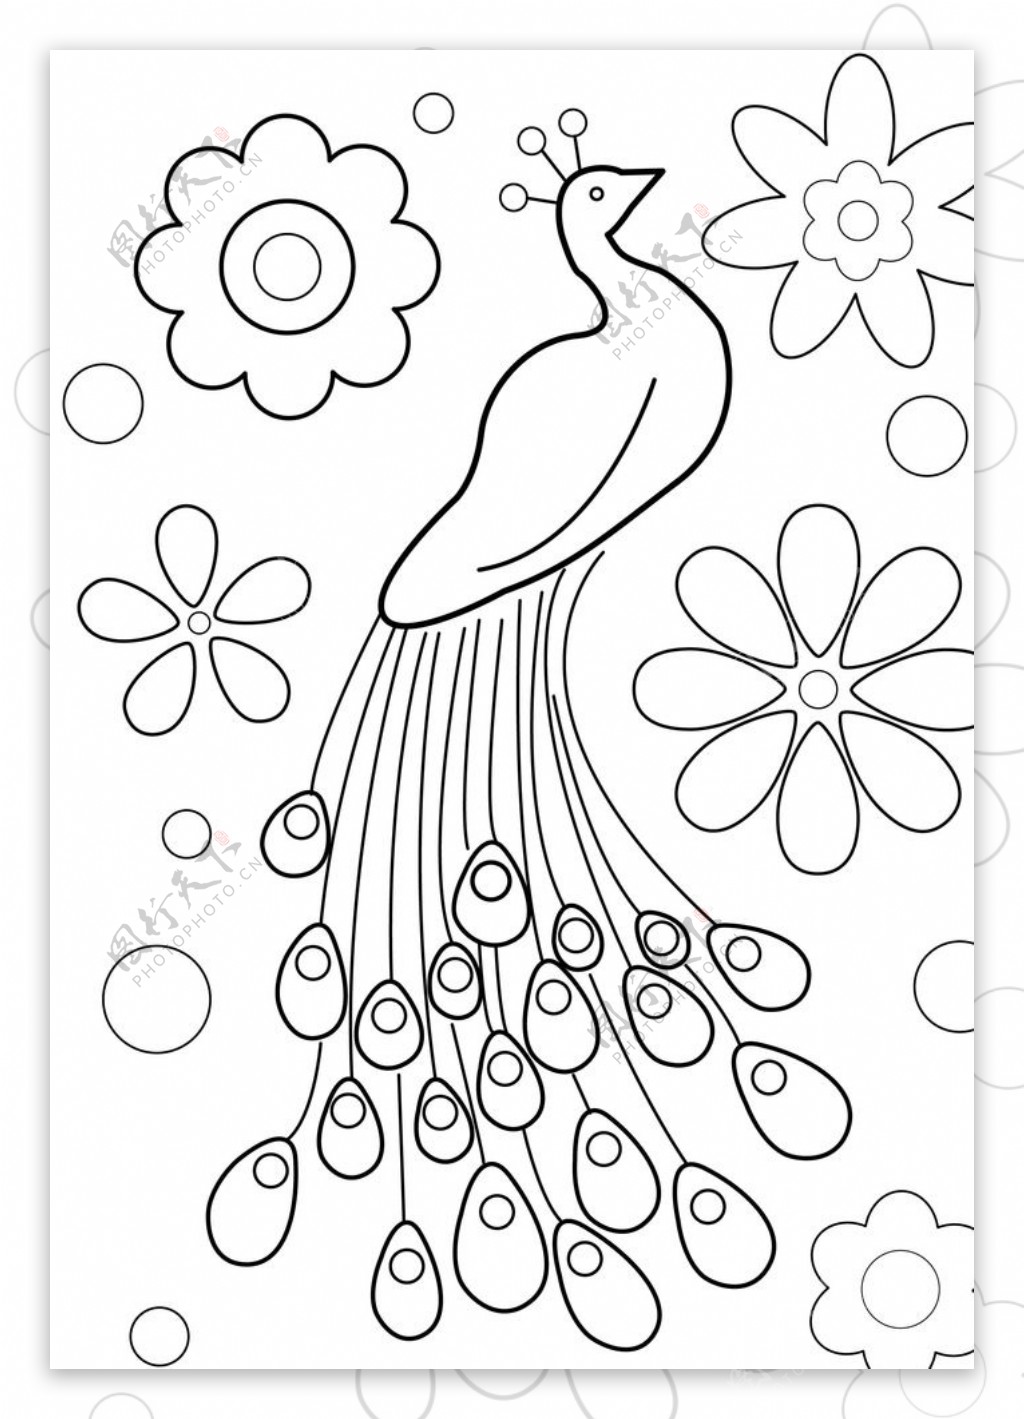 孔雀线稿图花朵